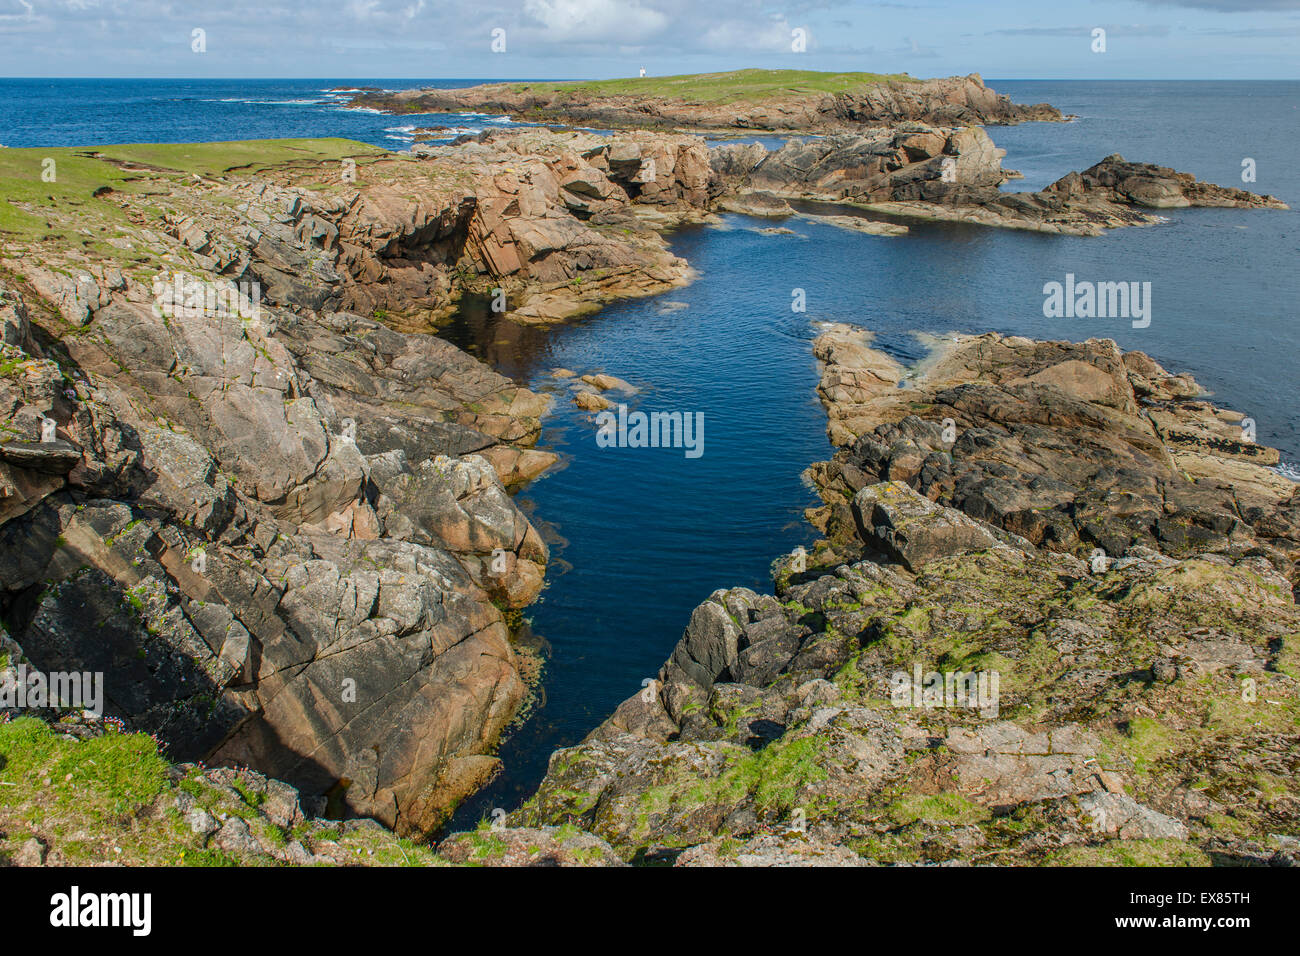 Costa al punto più settentrionale della Gran Bretagna, Unst, isole Shetland, Scotland, Regno Unito Foto Stock